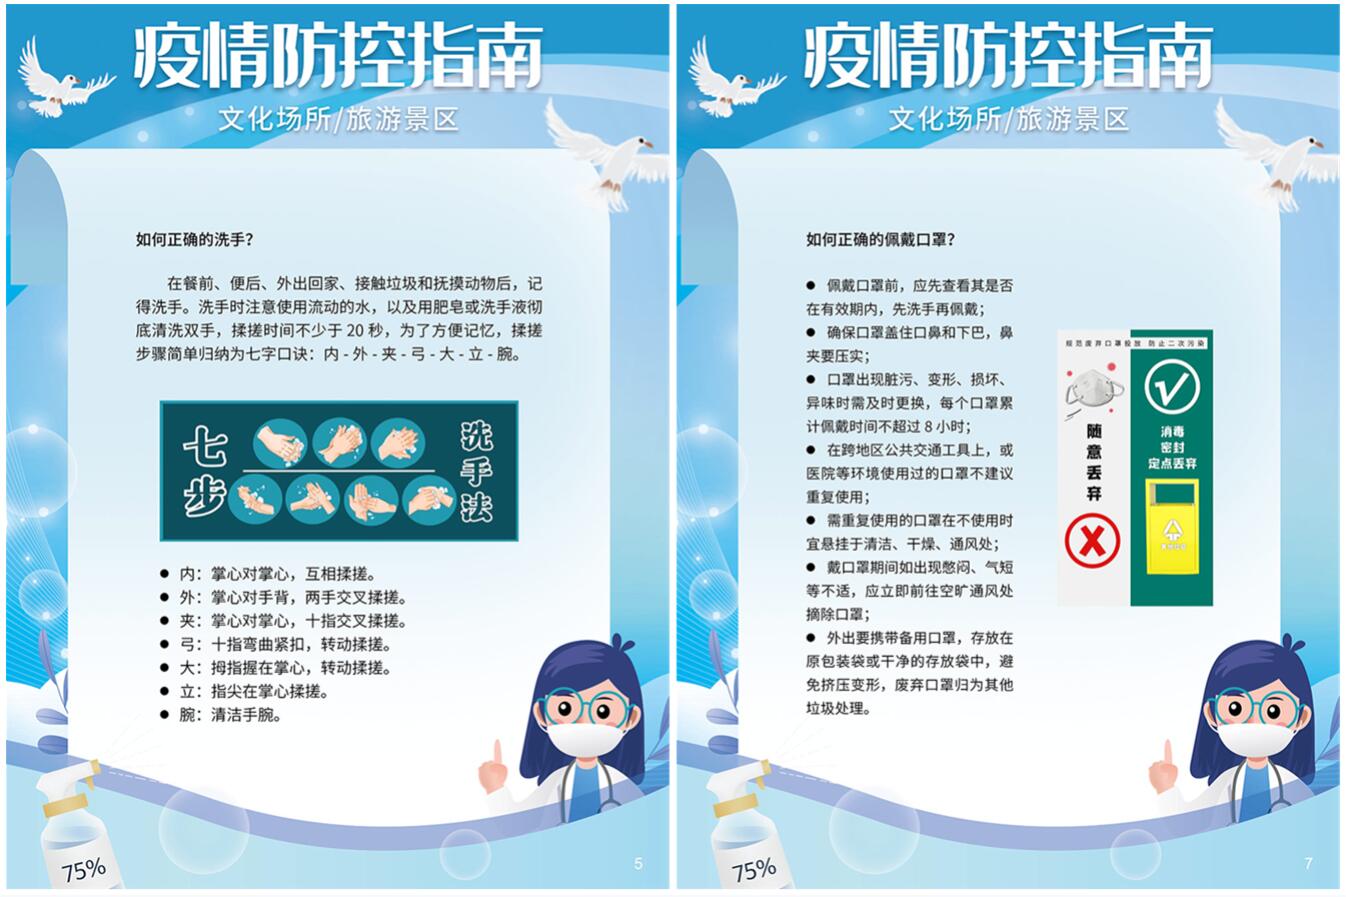 许昌市图书馆“疫情防控指南”网络展览活动